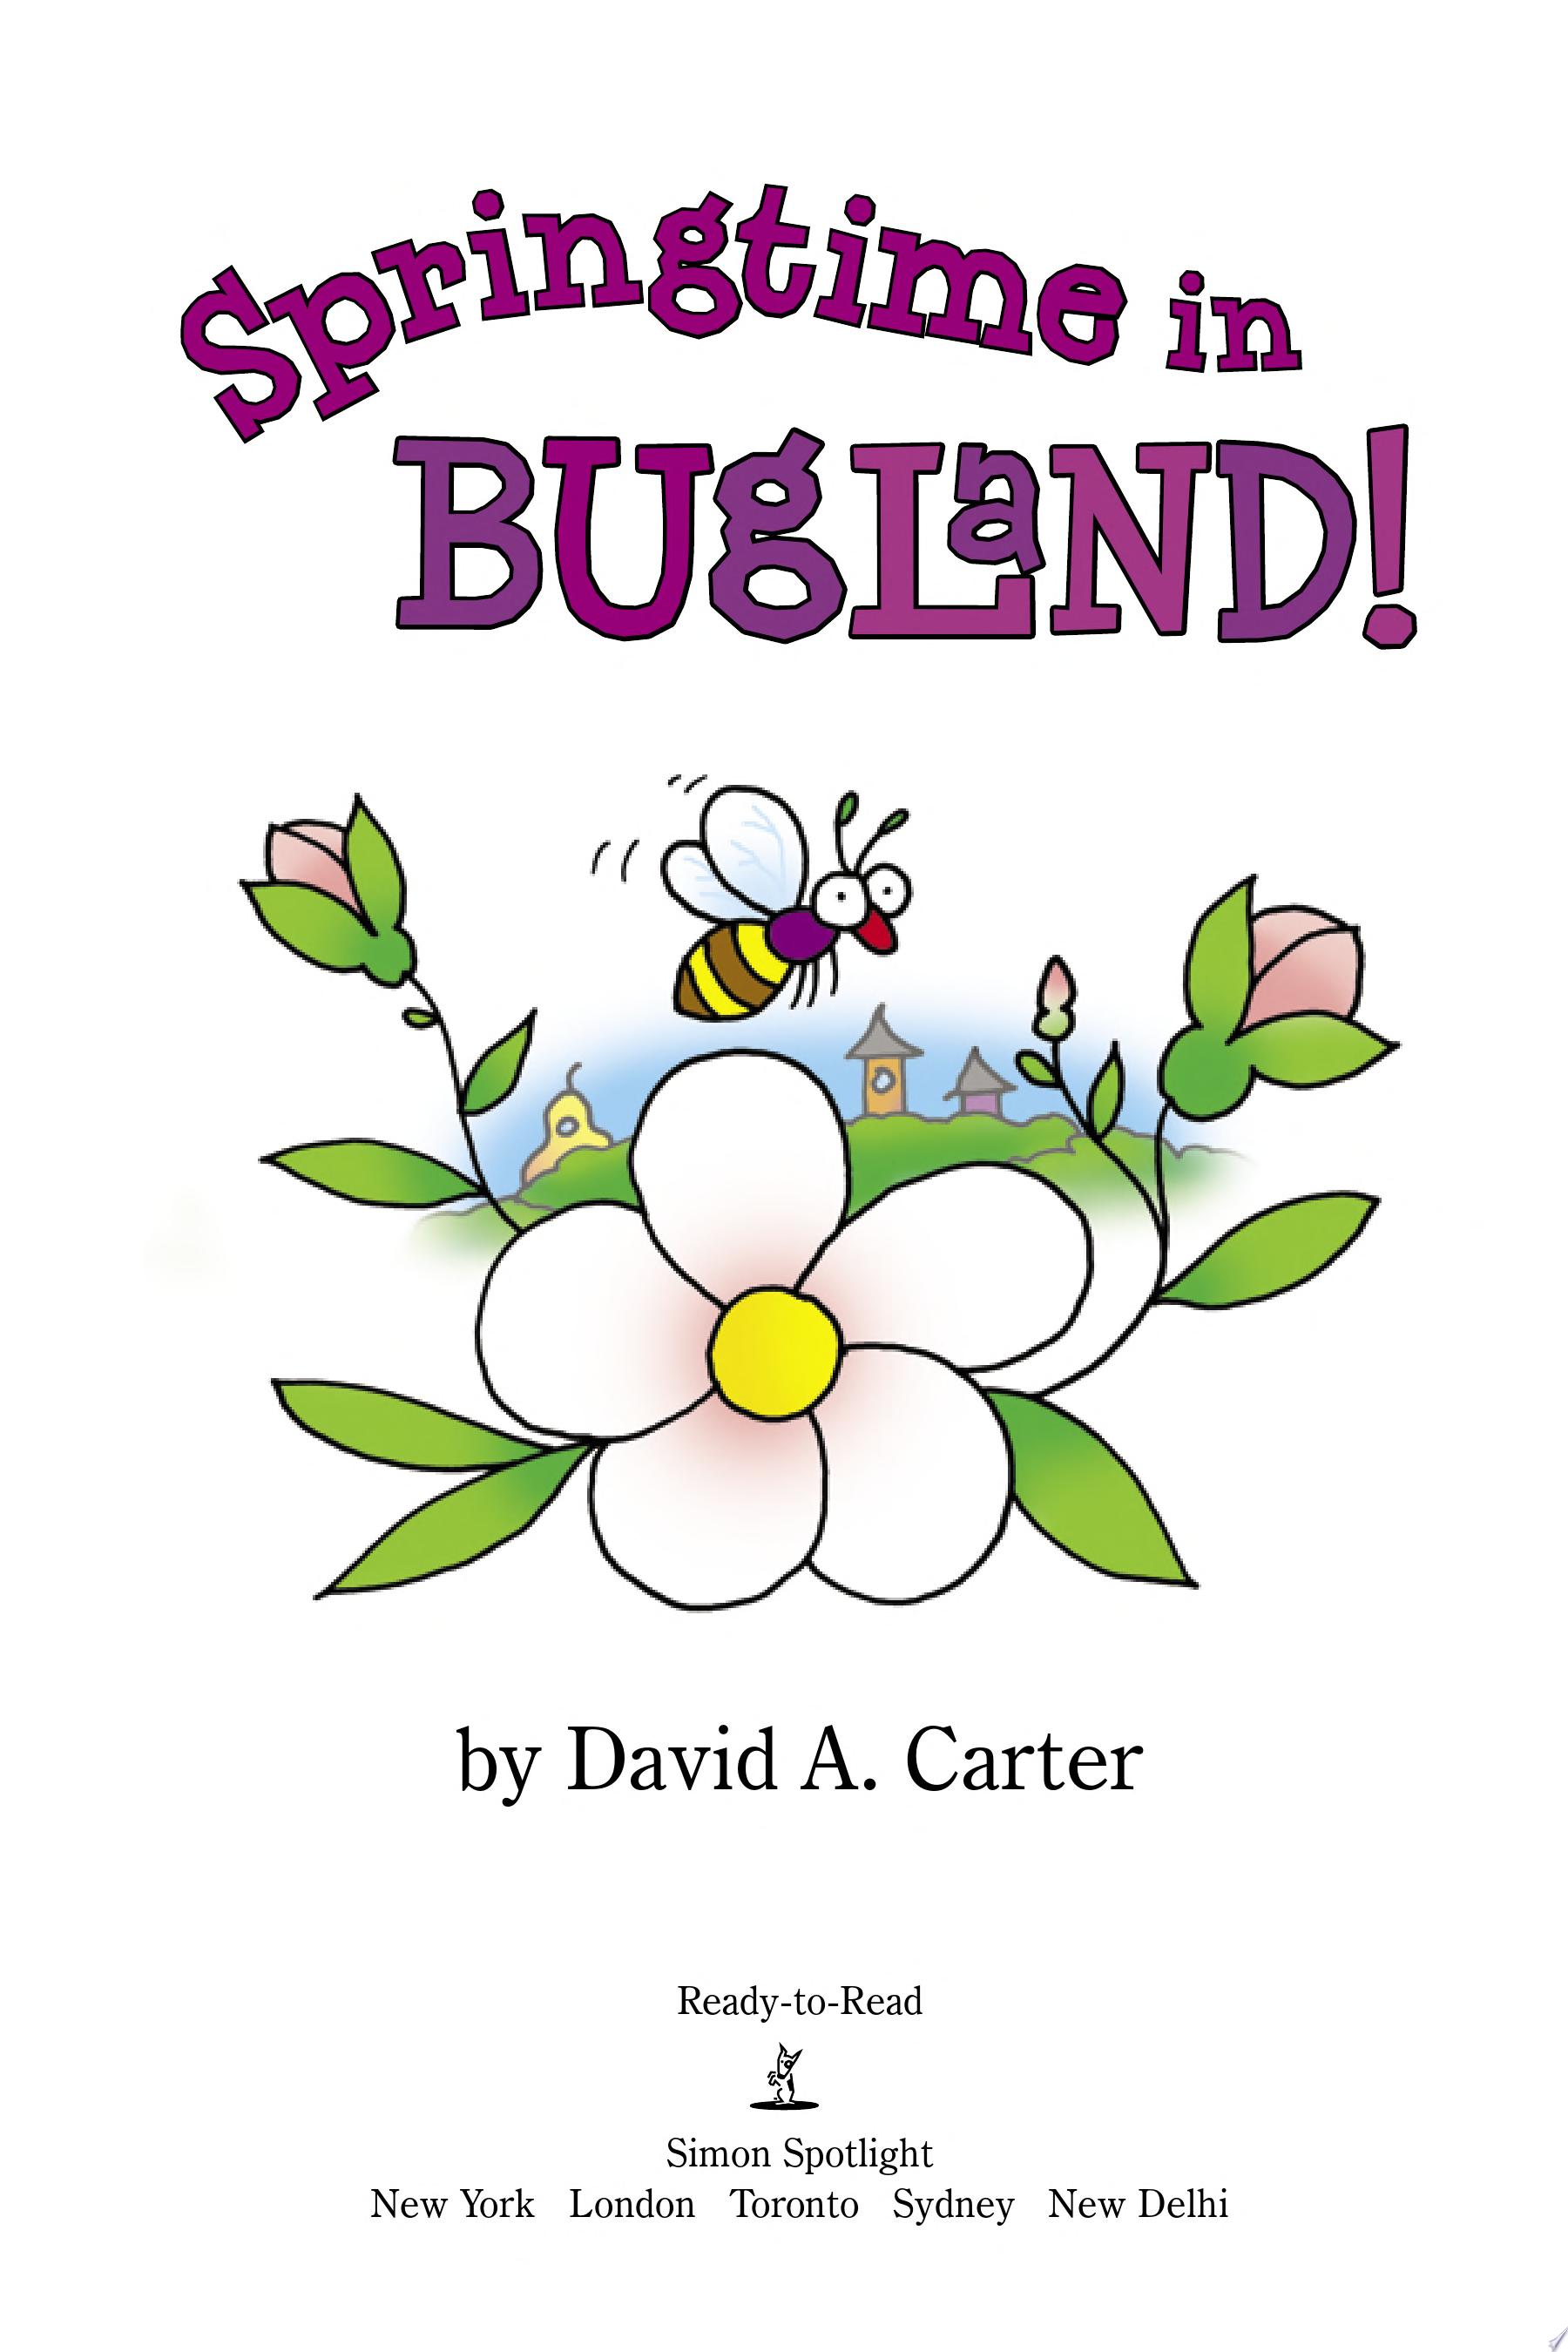 Image for "Springtime in Bugland!"